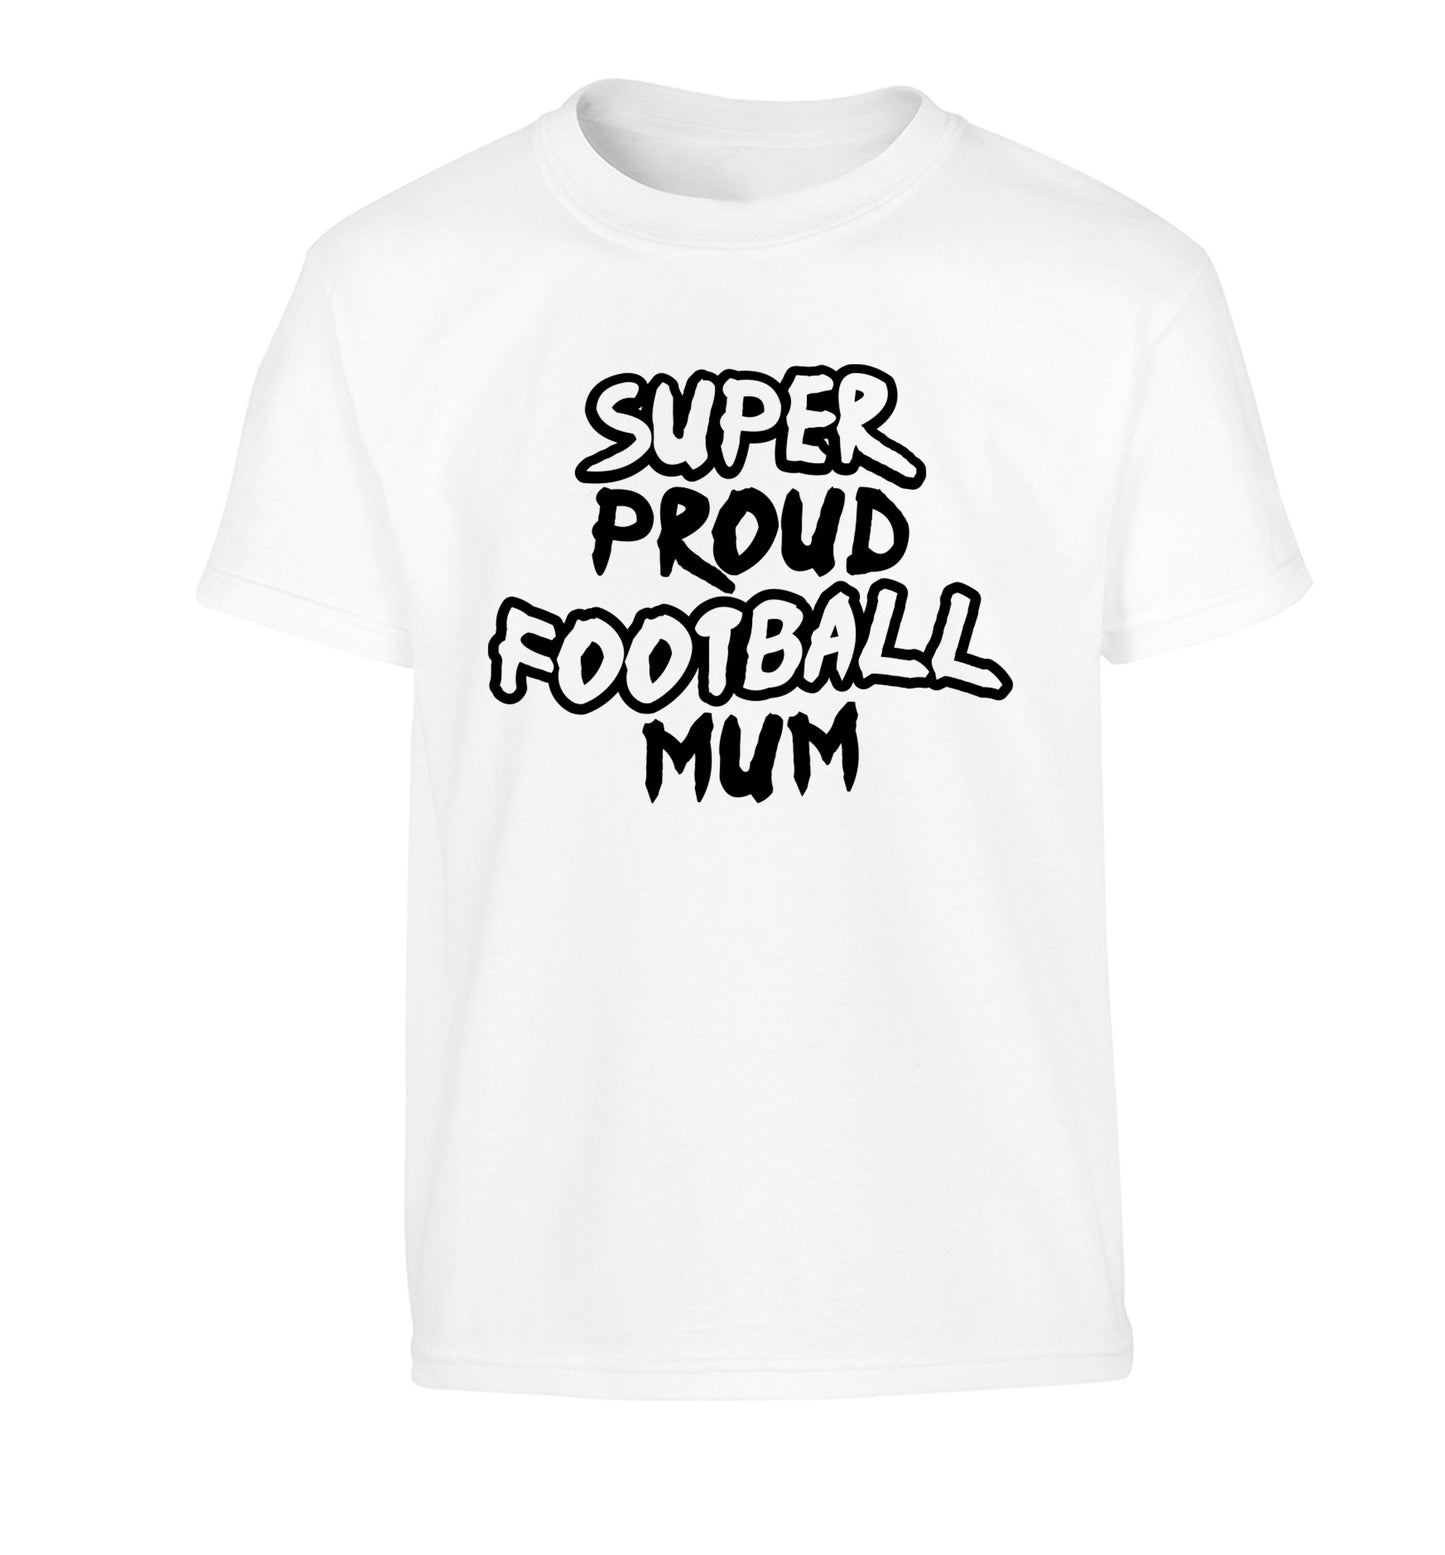 Super proud football mum Children's white Tshirt 12-14 Years